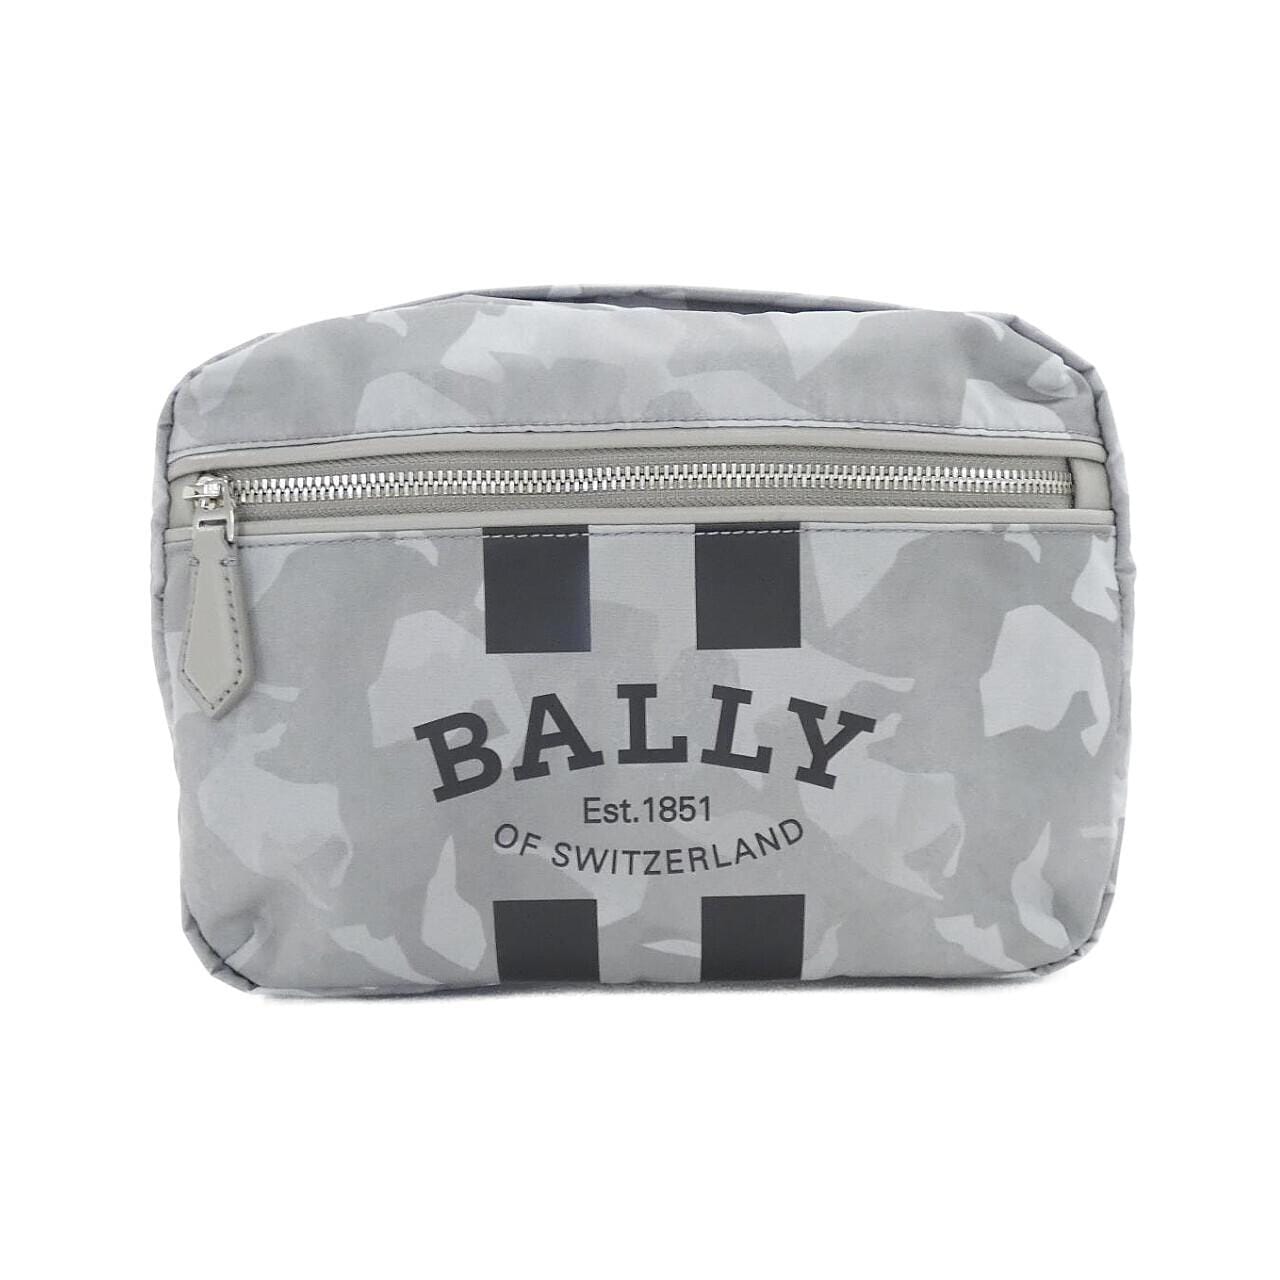 [BRAND NEW] Barry FALLIE CAM bag